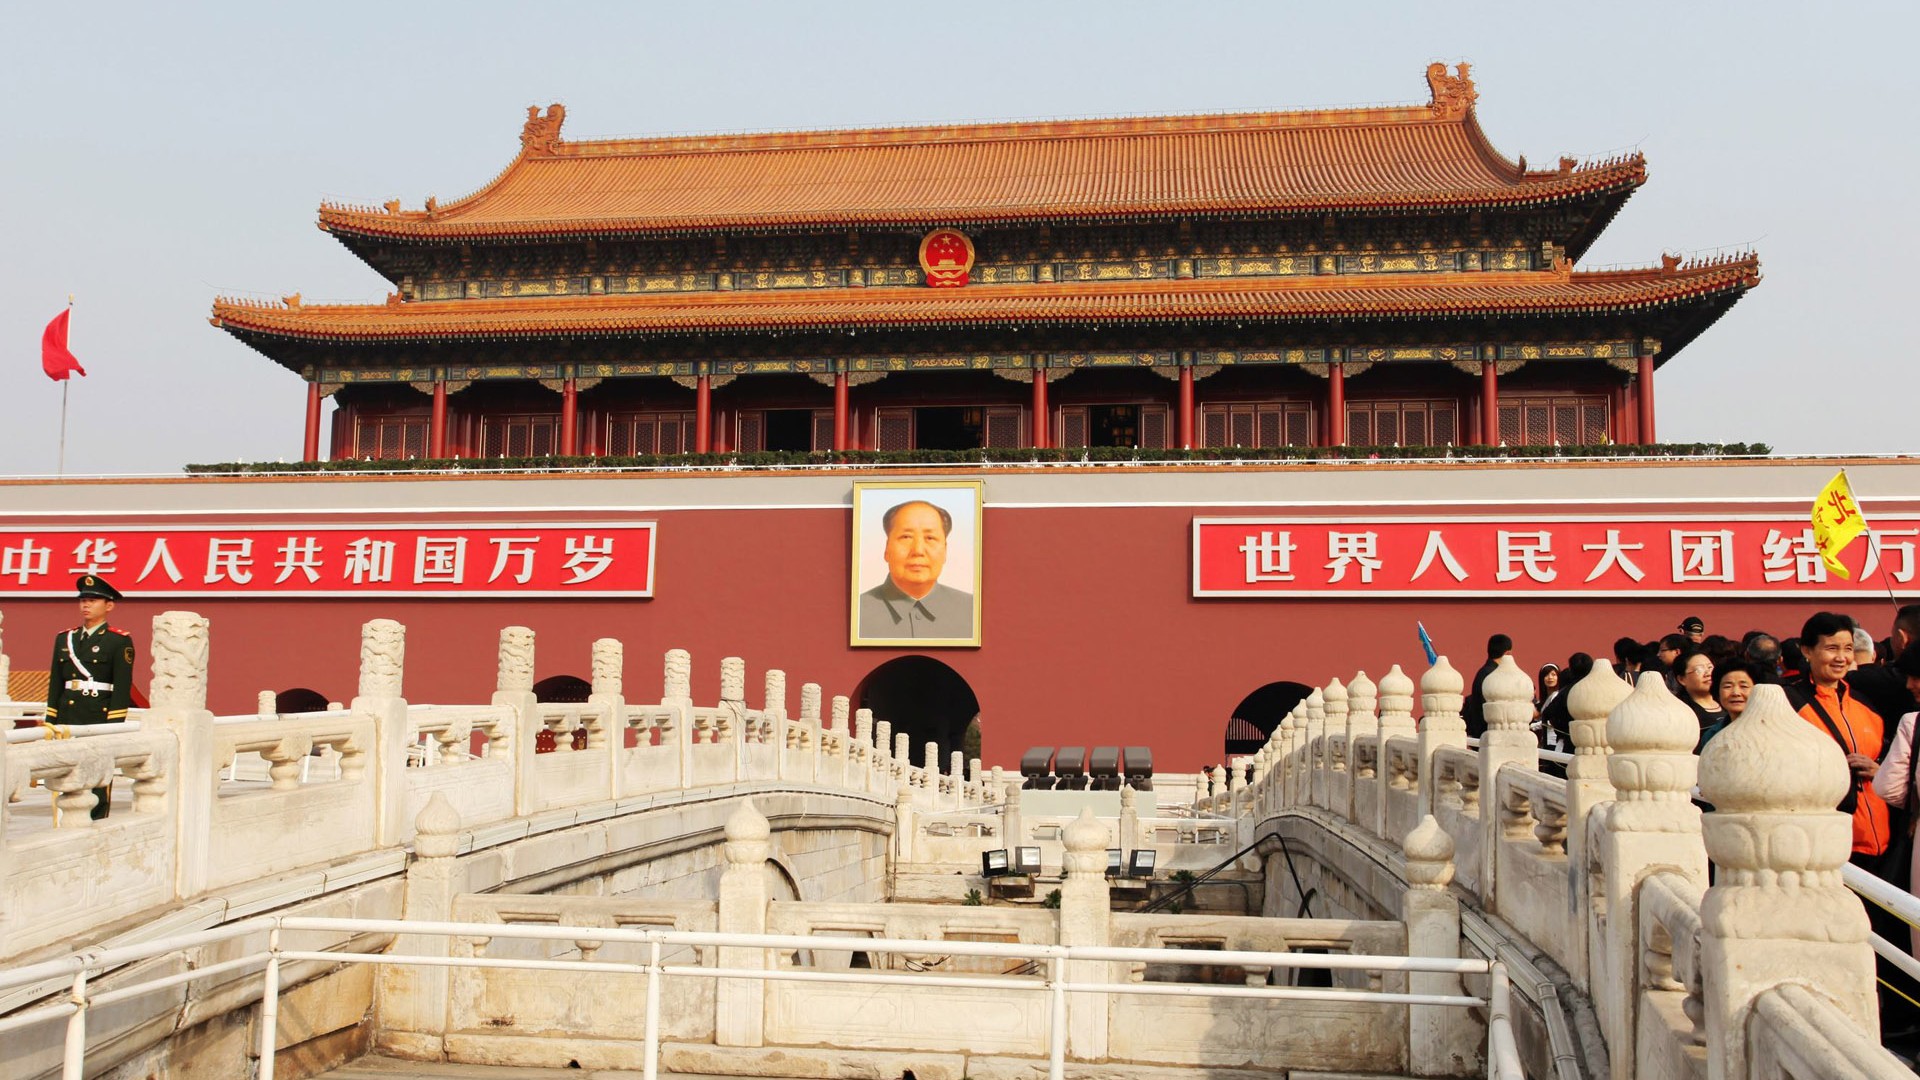 Tour Beijing - Platz des Himmlischen Friedens (GGC Werke) #1 - 1920x1080